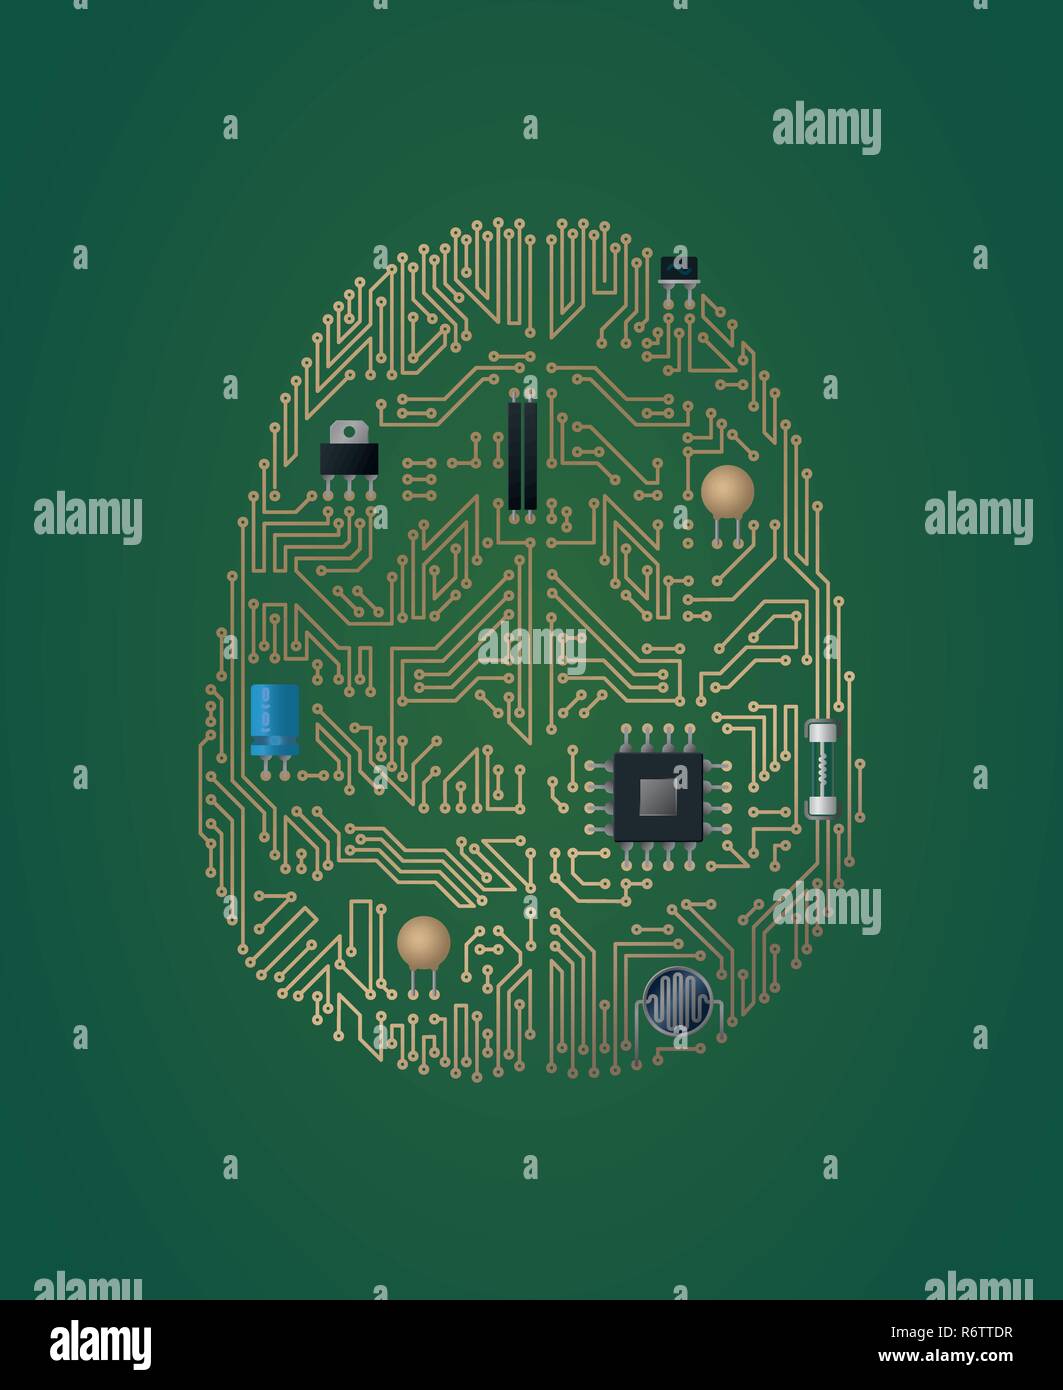 Menschliche Gehirn motherboard Vector Illustration. Künstliche Intelligenz Konzept. Stock Vektor